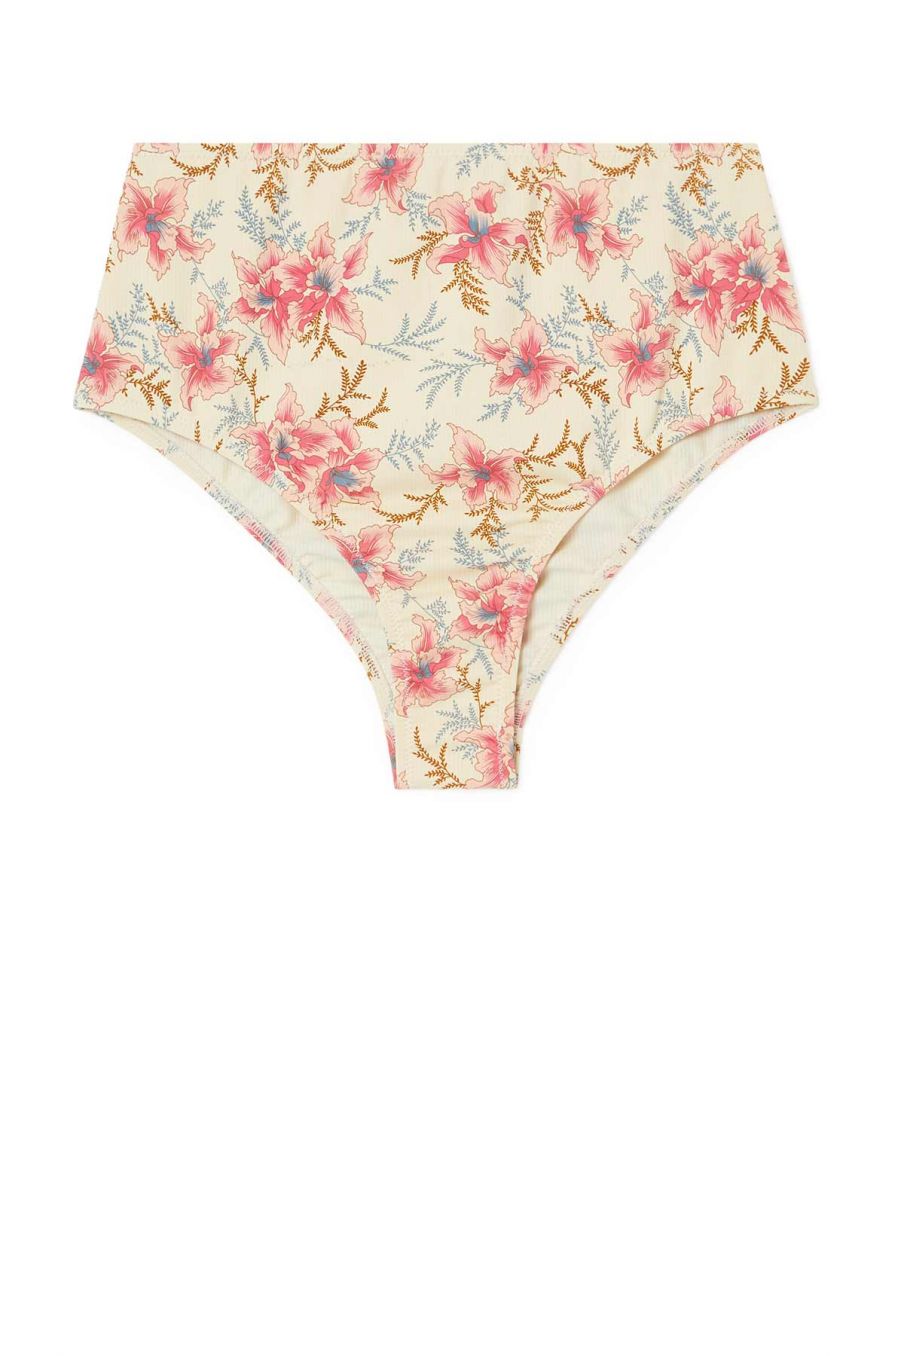 women-swimwear-creeky-raspberry-flowers